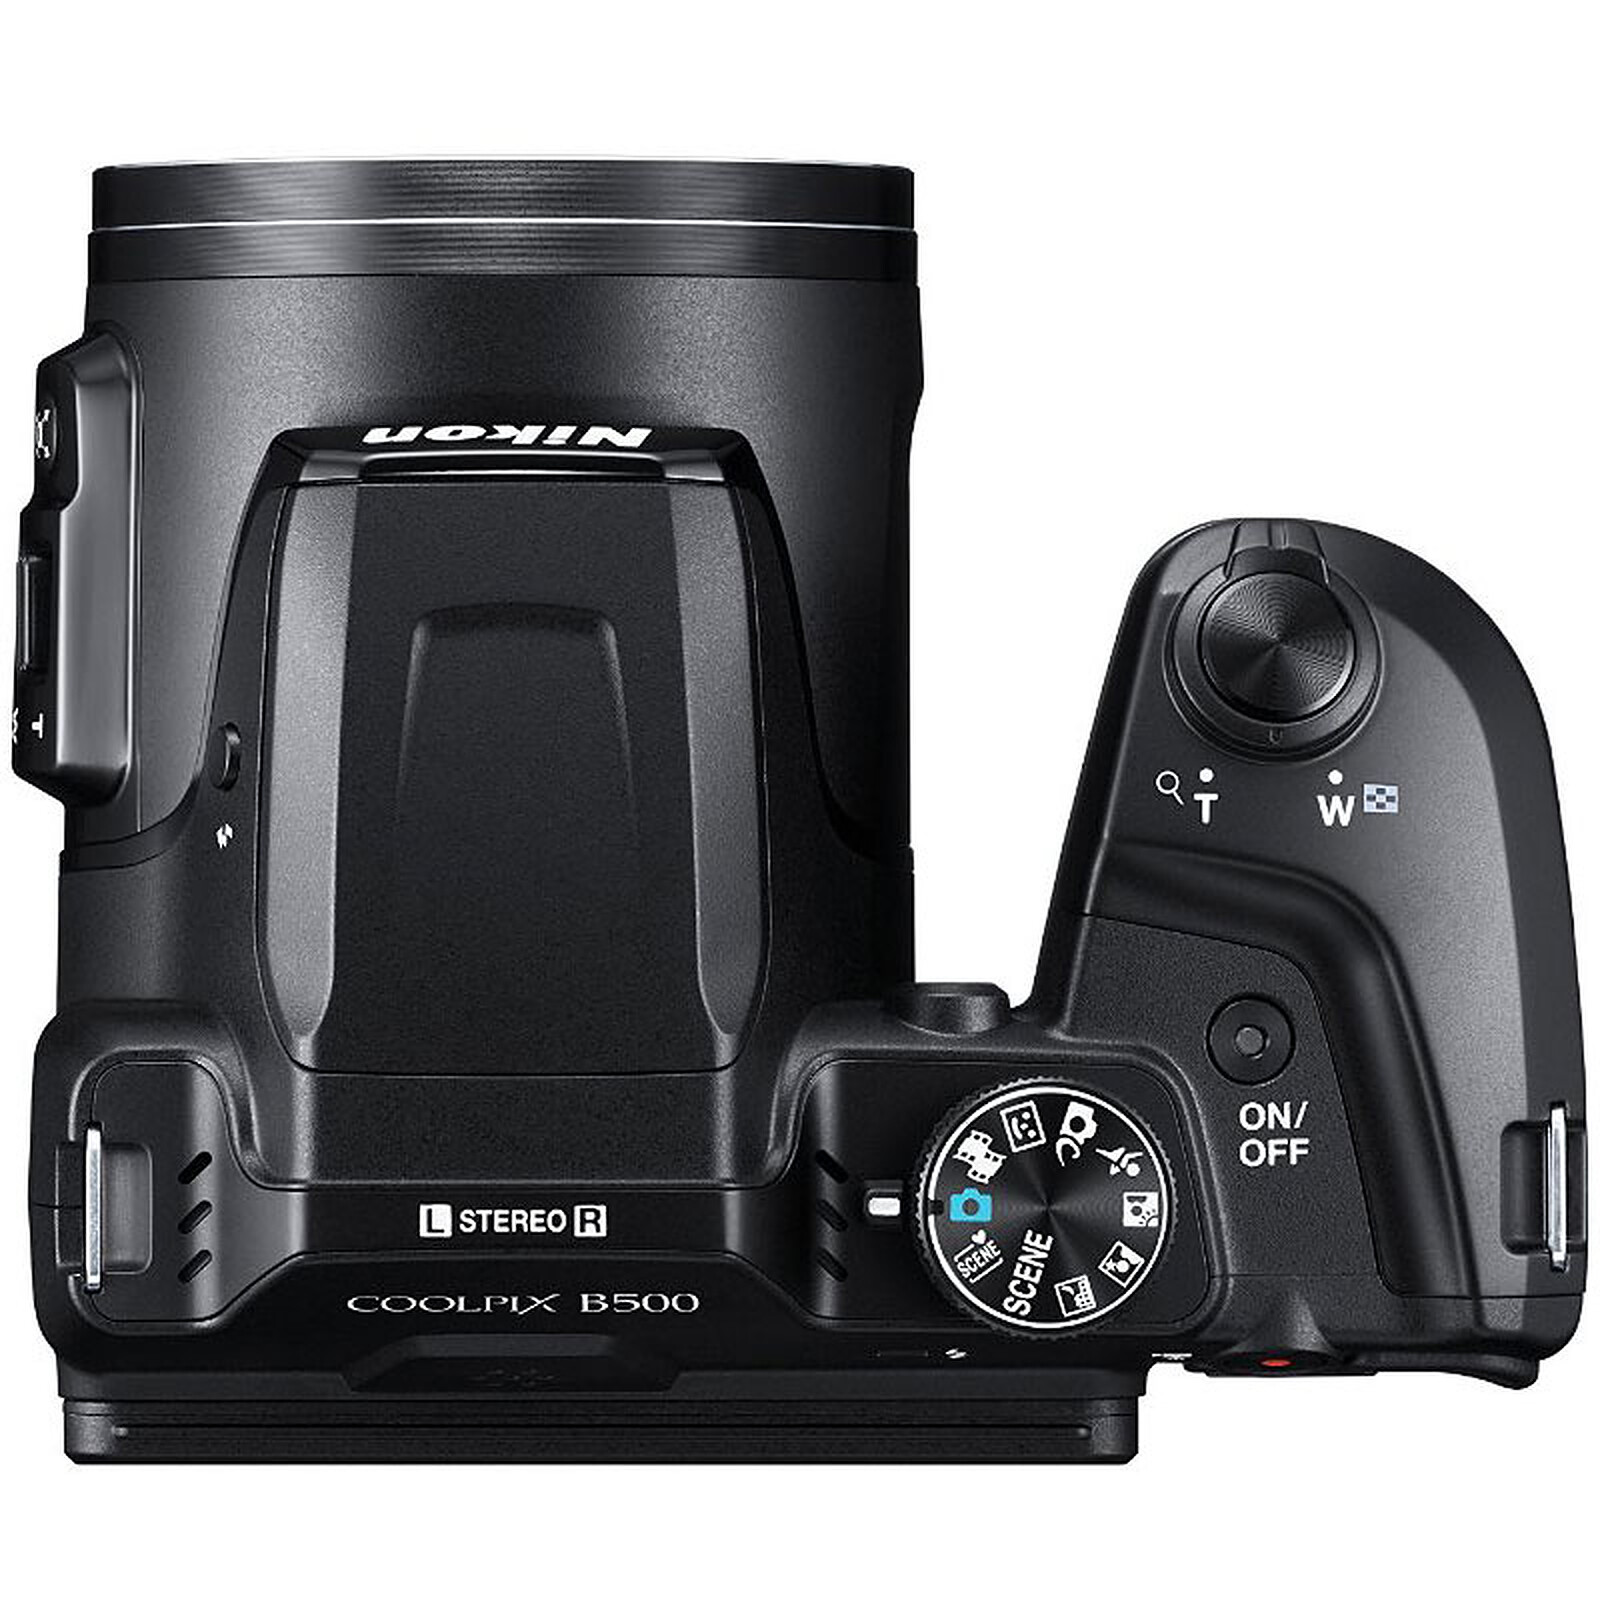 Nikon Coolpix P950 - Appareil photo numérique - Garantie 3 ans LDLC